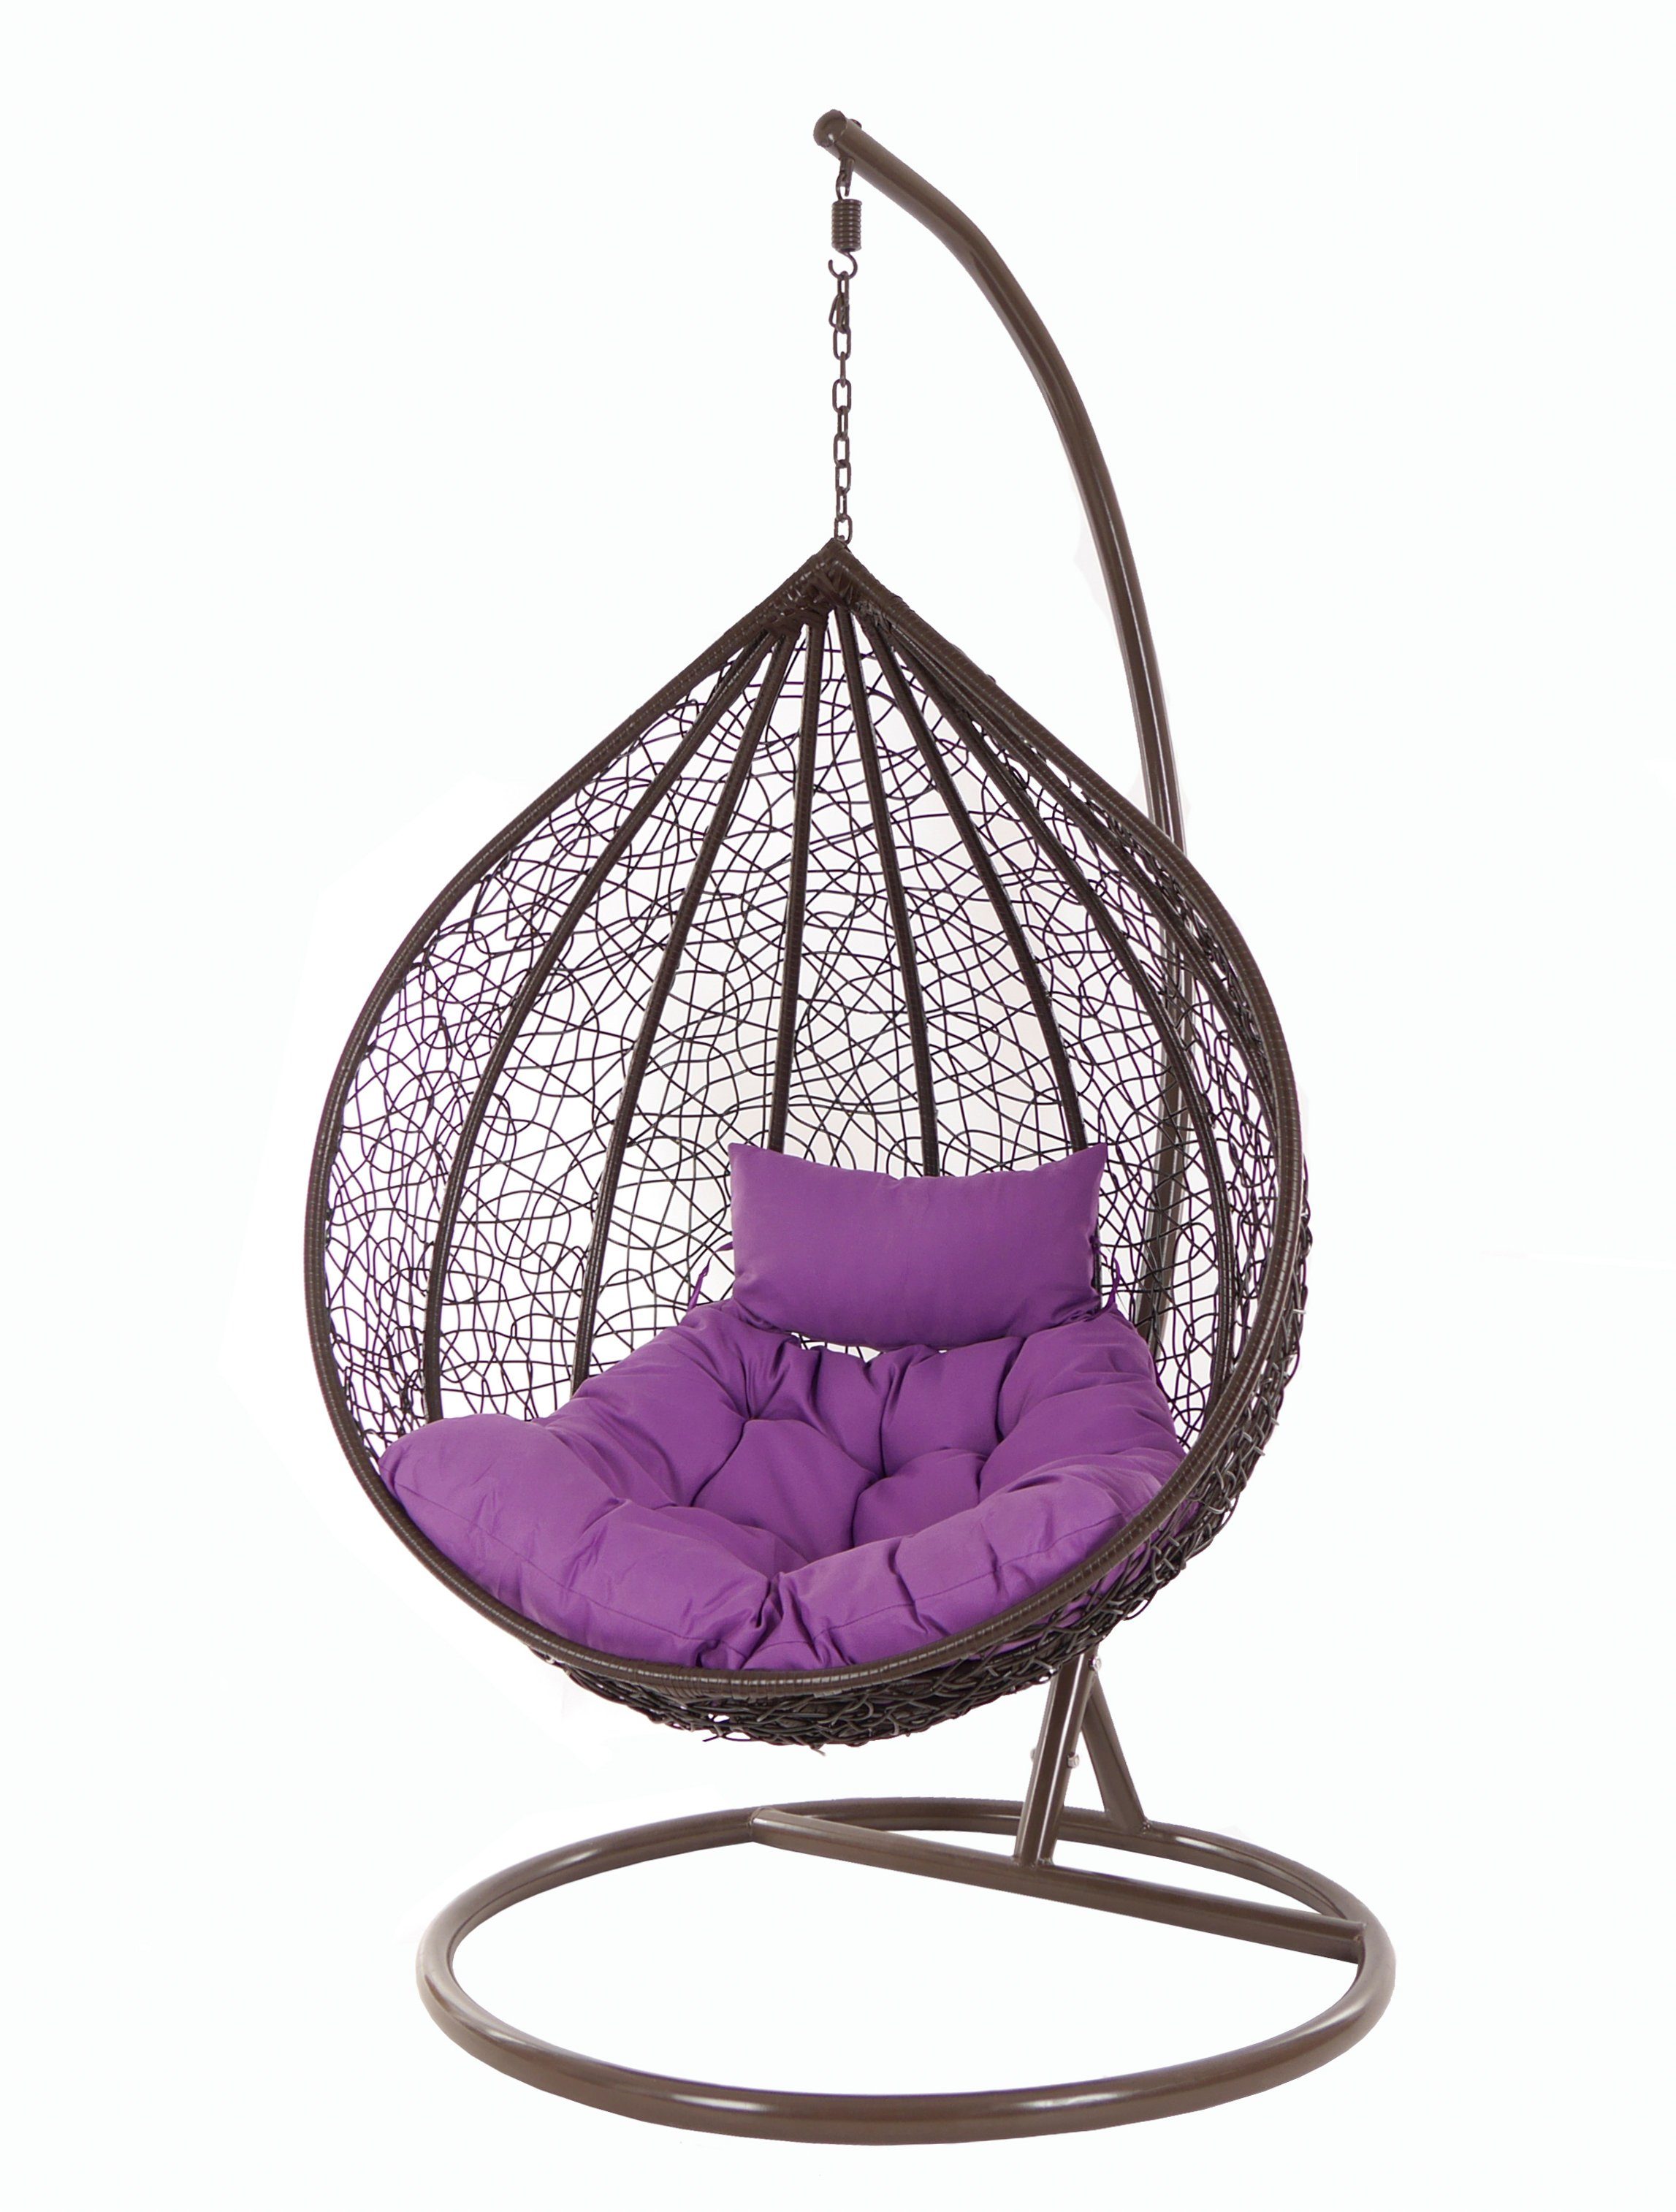 KIDEO Hängesessel Hängesessel MANACOR darkbrown, Swing Chair, Hängesessel mit Gestell und Kissen, dunkelbraun, Loungemöbel lila (4050 violet)